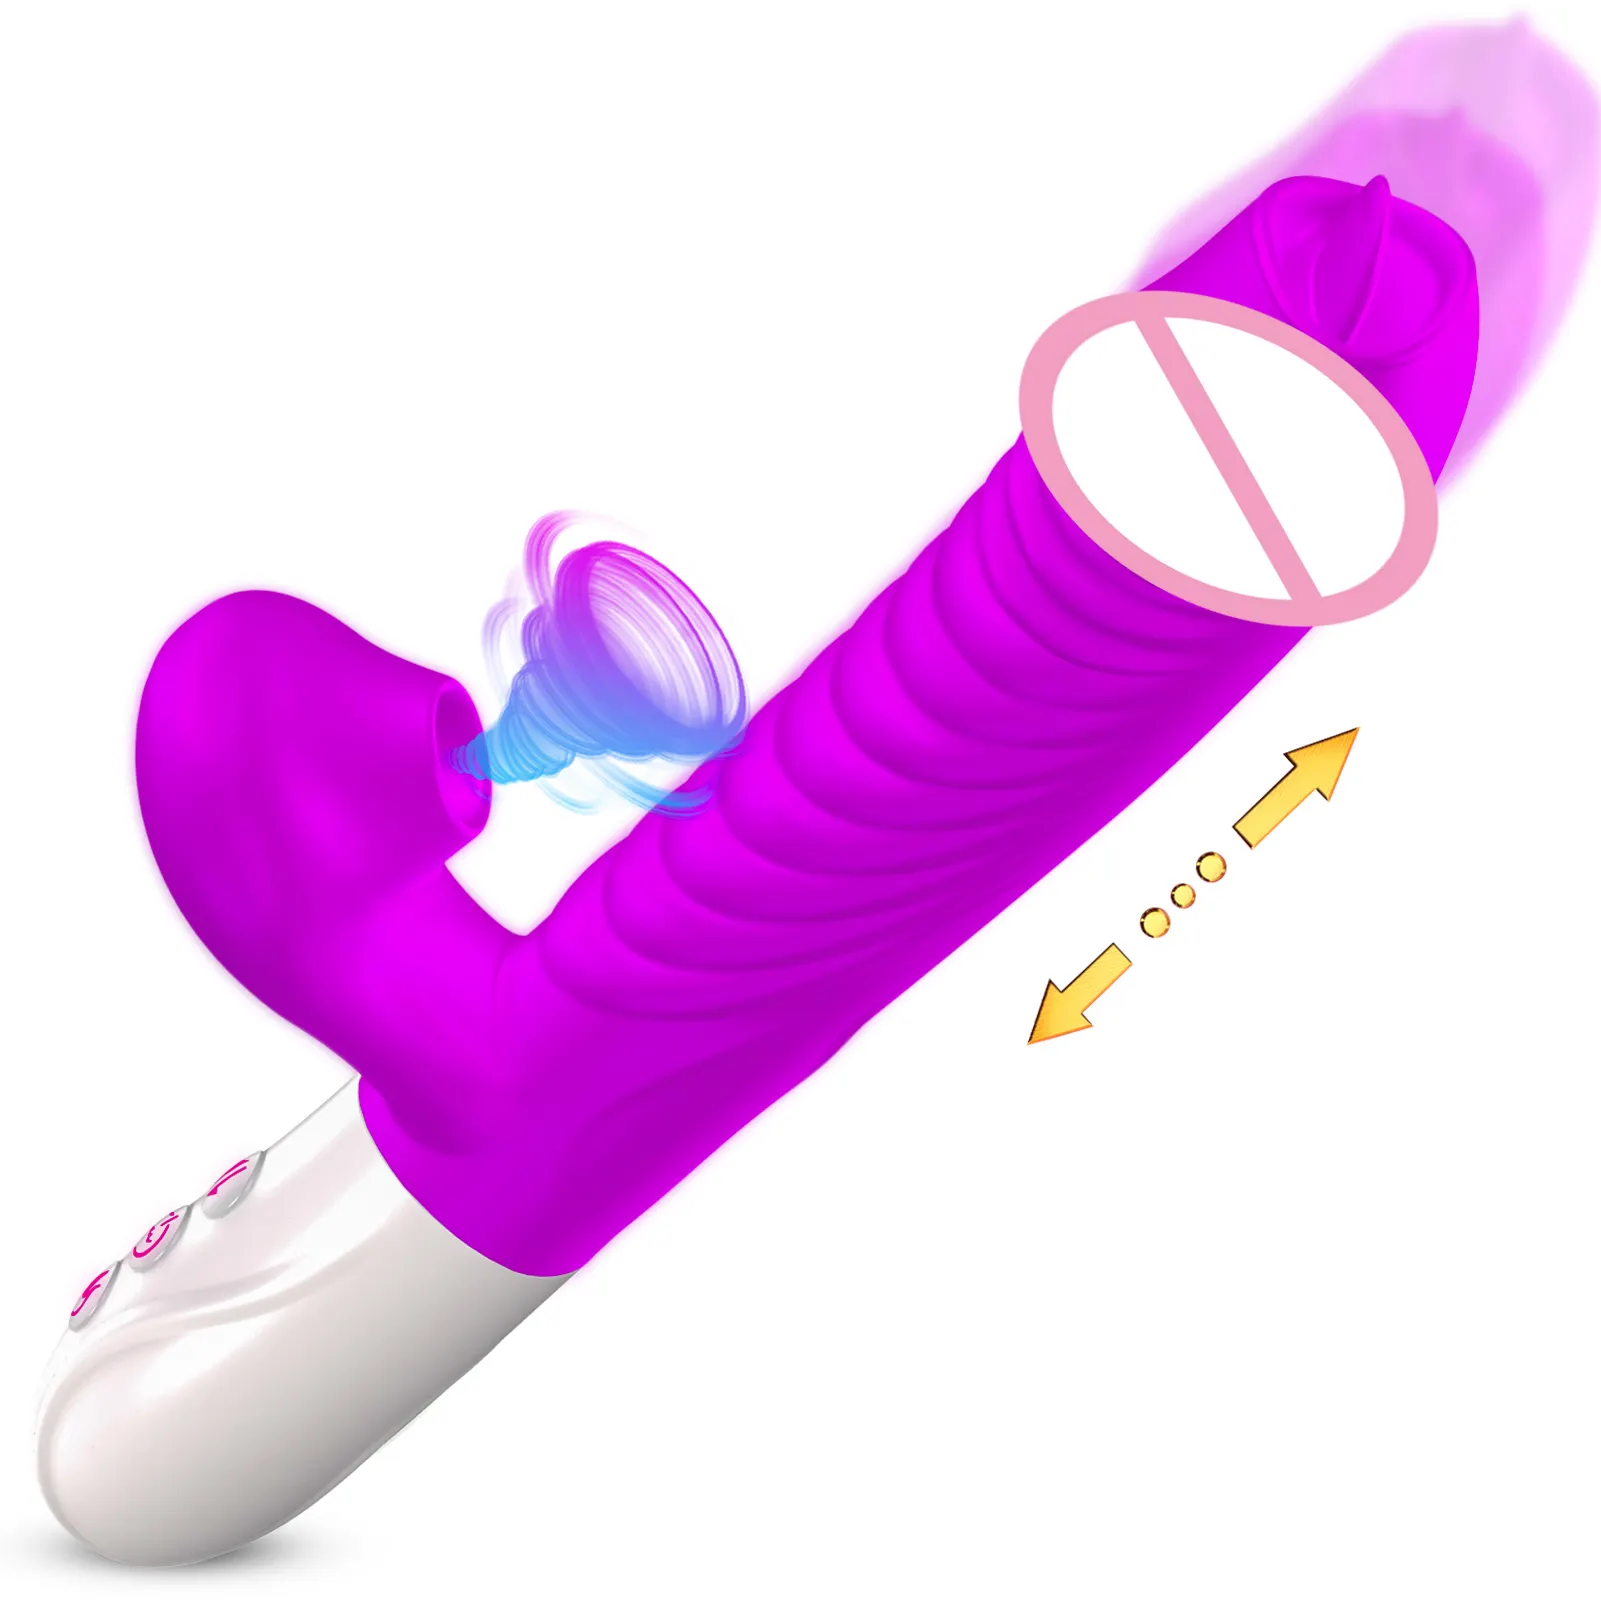 3 en 1 vibrador estimulación del clítoris calentado realista vibrador adultos juguetes sexuales chupar clítoris conejo vibrador para mujeres